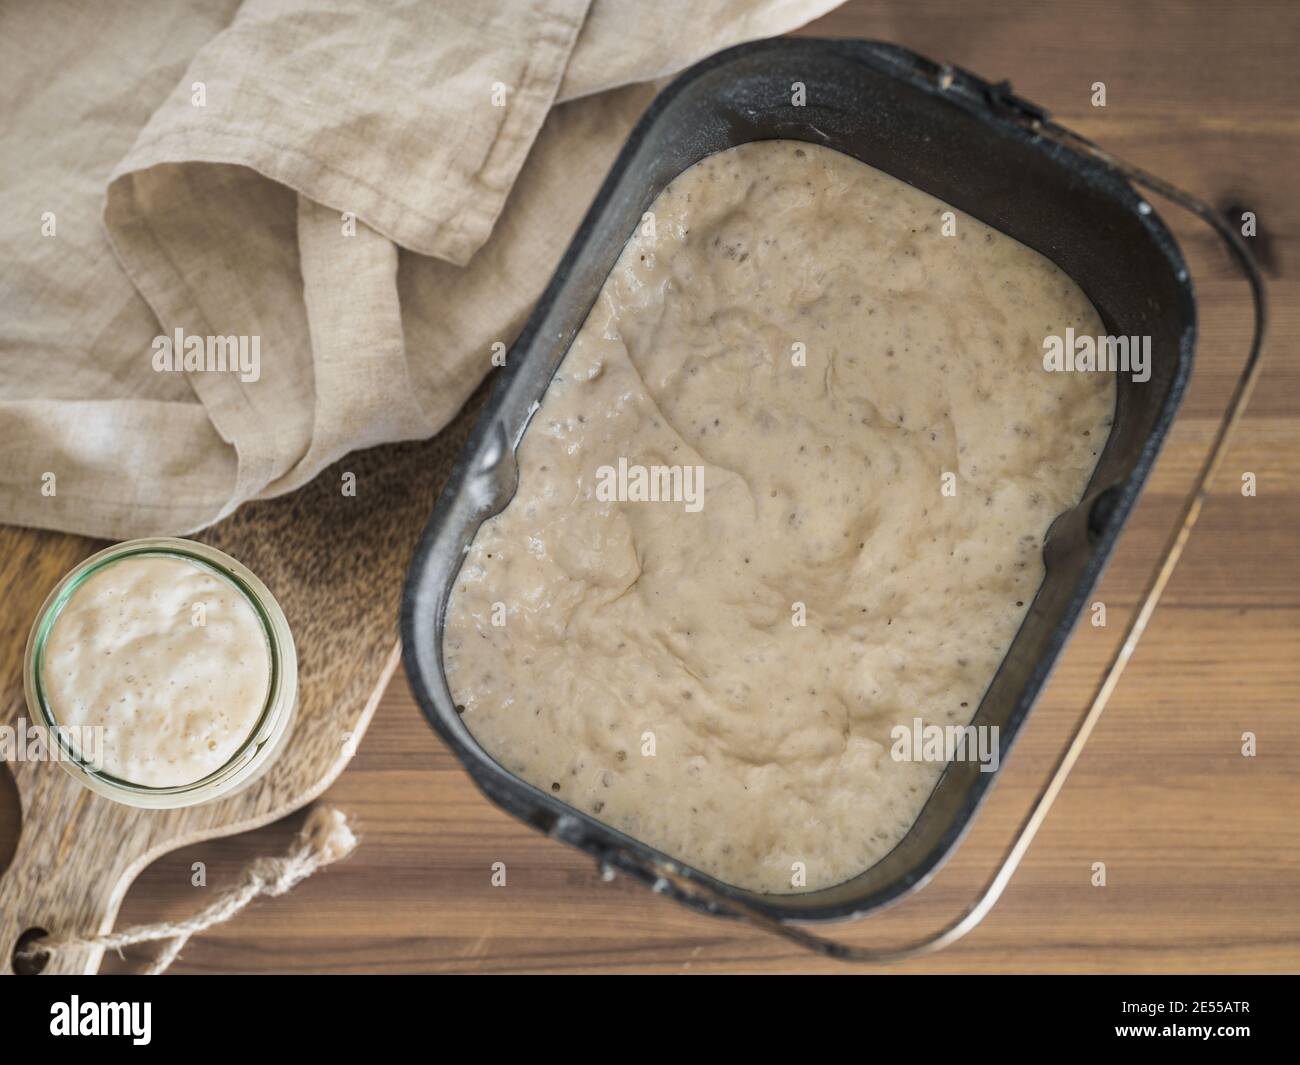 Masa fermentada de trigo en jarra de cristal y masa fermentada en pan de pan de máquina para hacer pan. Concepto de panificadora casera Foto de stock